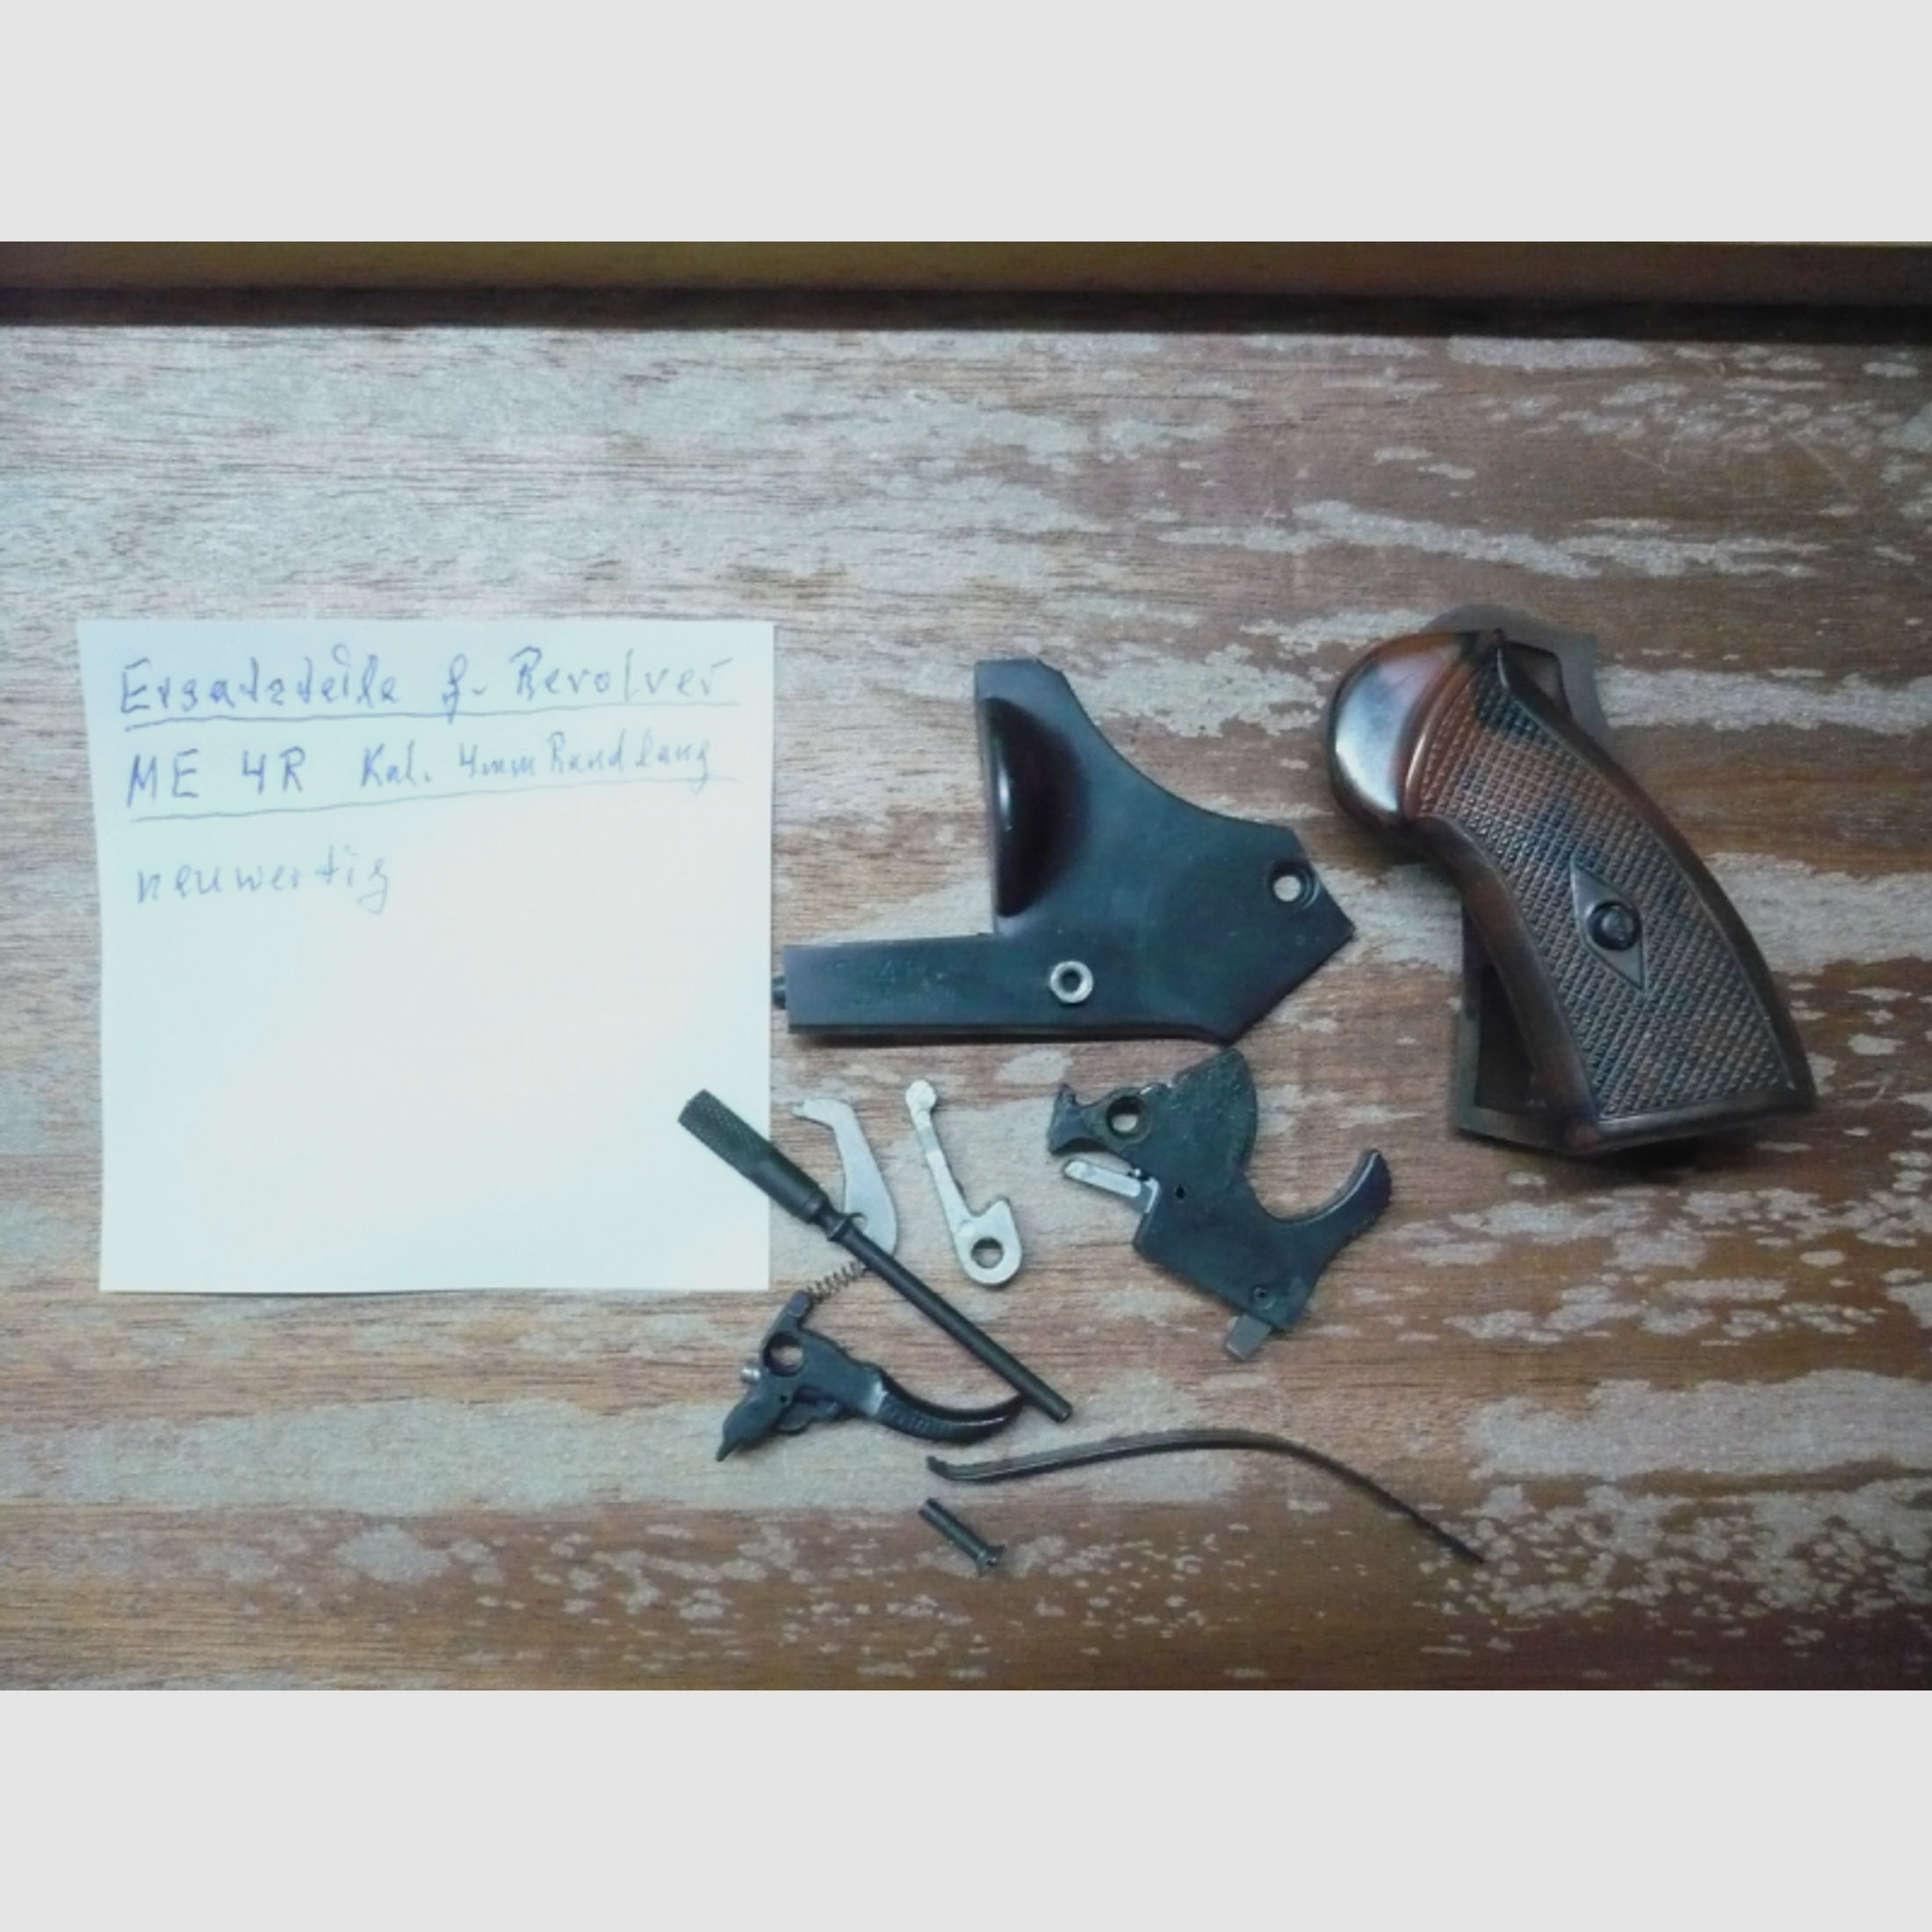 Ersatzteile für Revolver ME 4R, Kal. 4mmRandz.lang